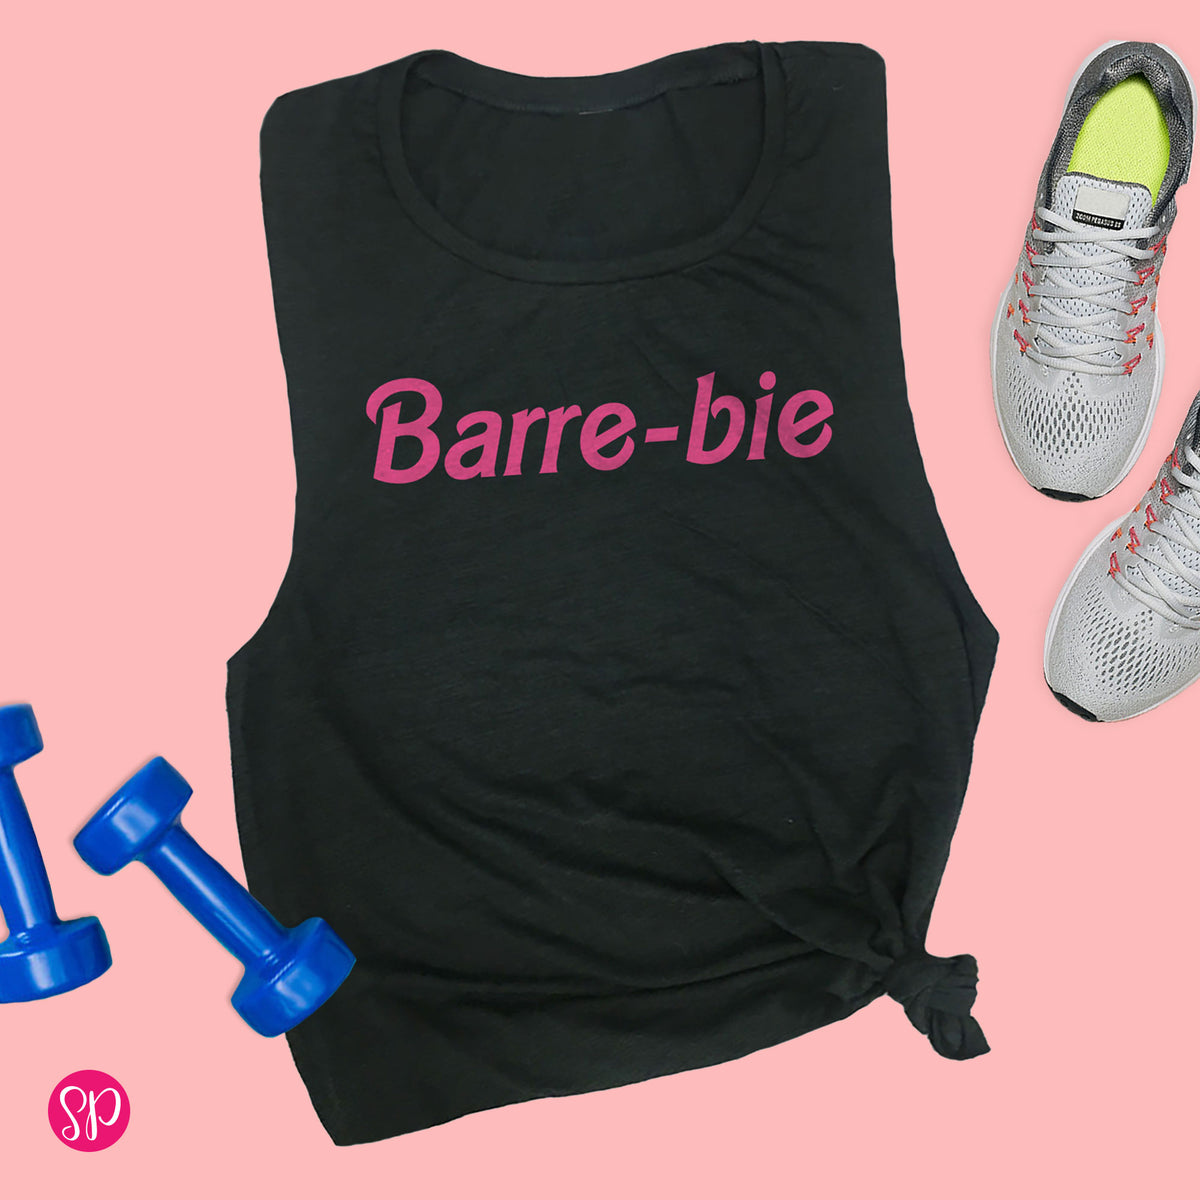 Barre-bie Barre Fitness Womens Muscle Tank